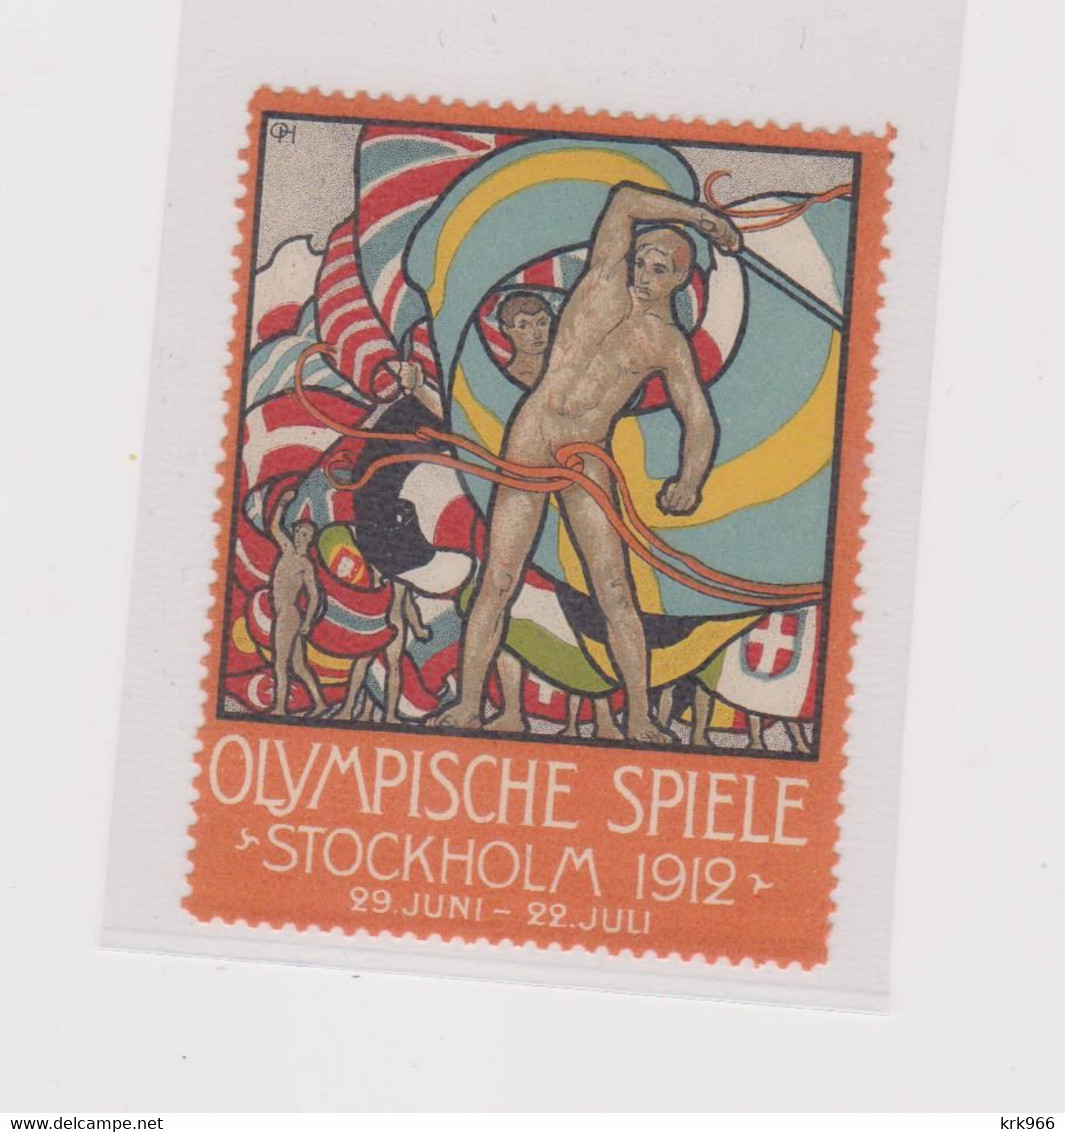 SWEDEN Poster Stamp OLYMPIC GAMES 1912 STOCKHOLM - Sommer 1912: Stockholm